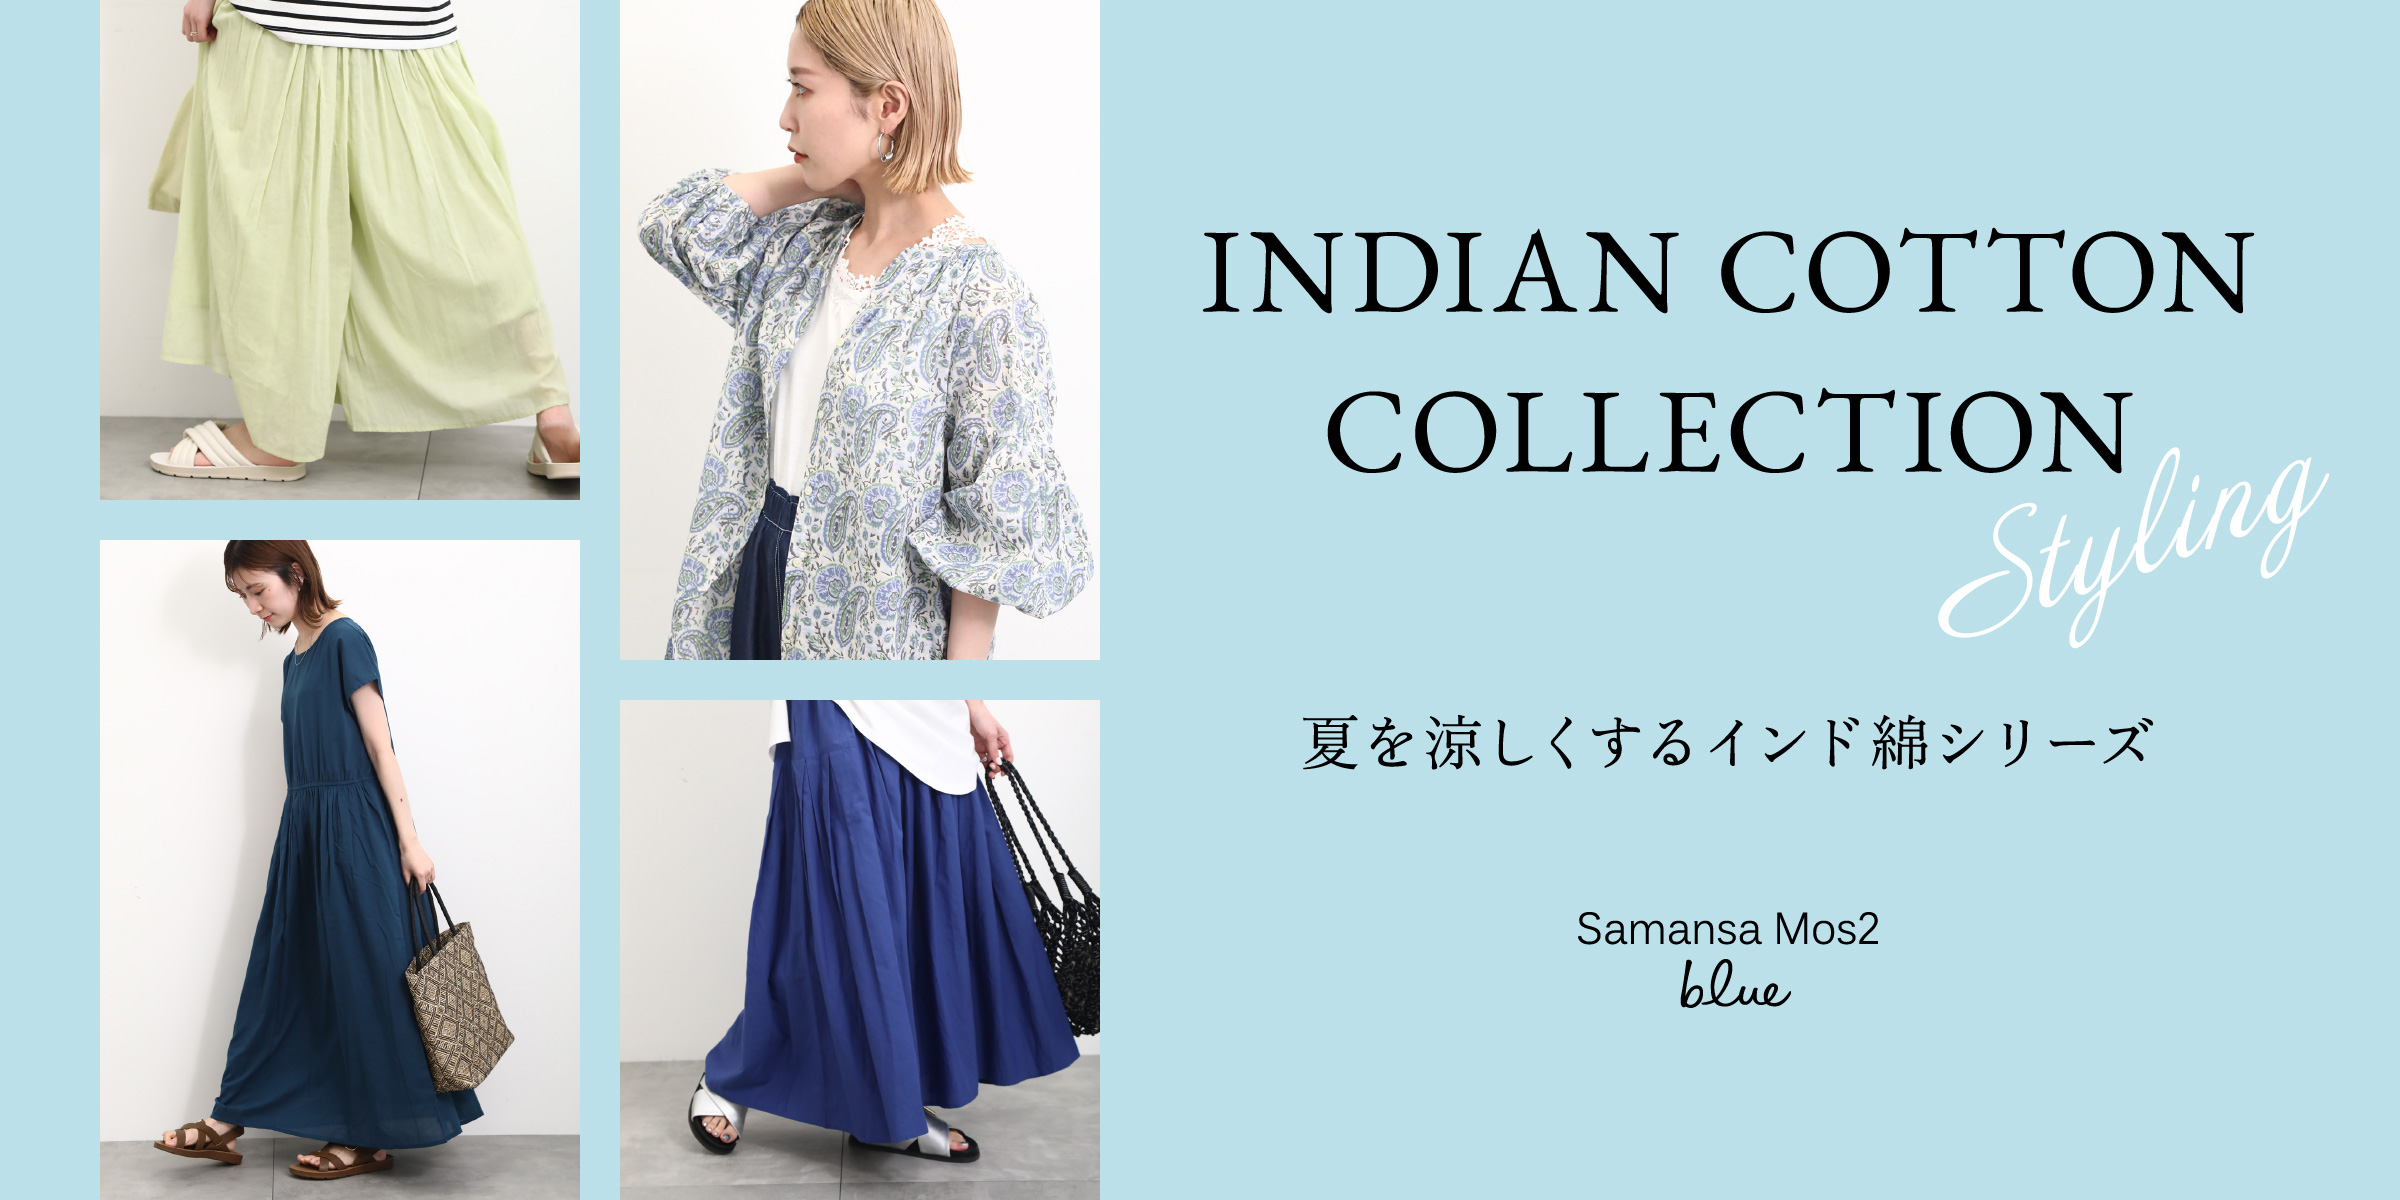 INDIAN COTTON COLLECTION 夏を涼しくするインド綿シリーズ Styling samansaMos2 blue